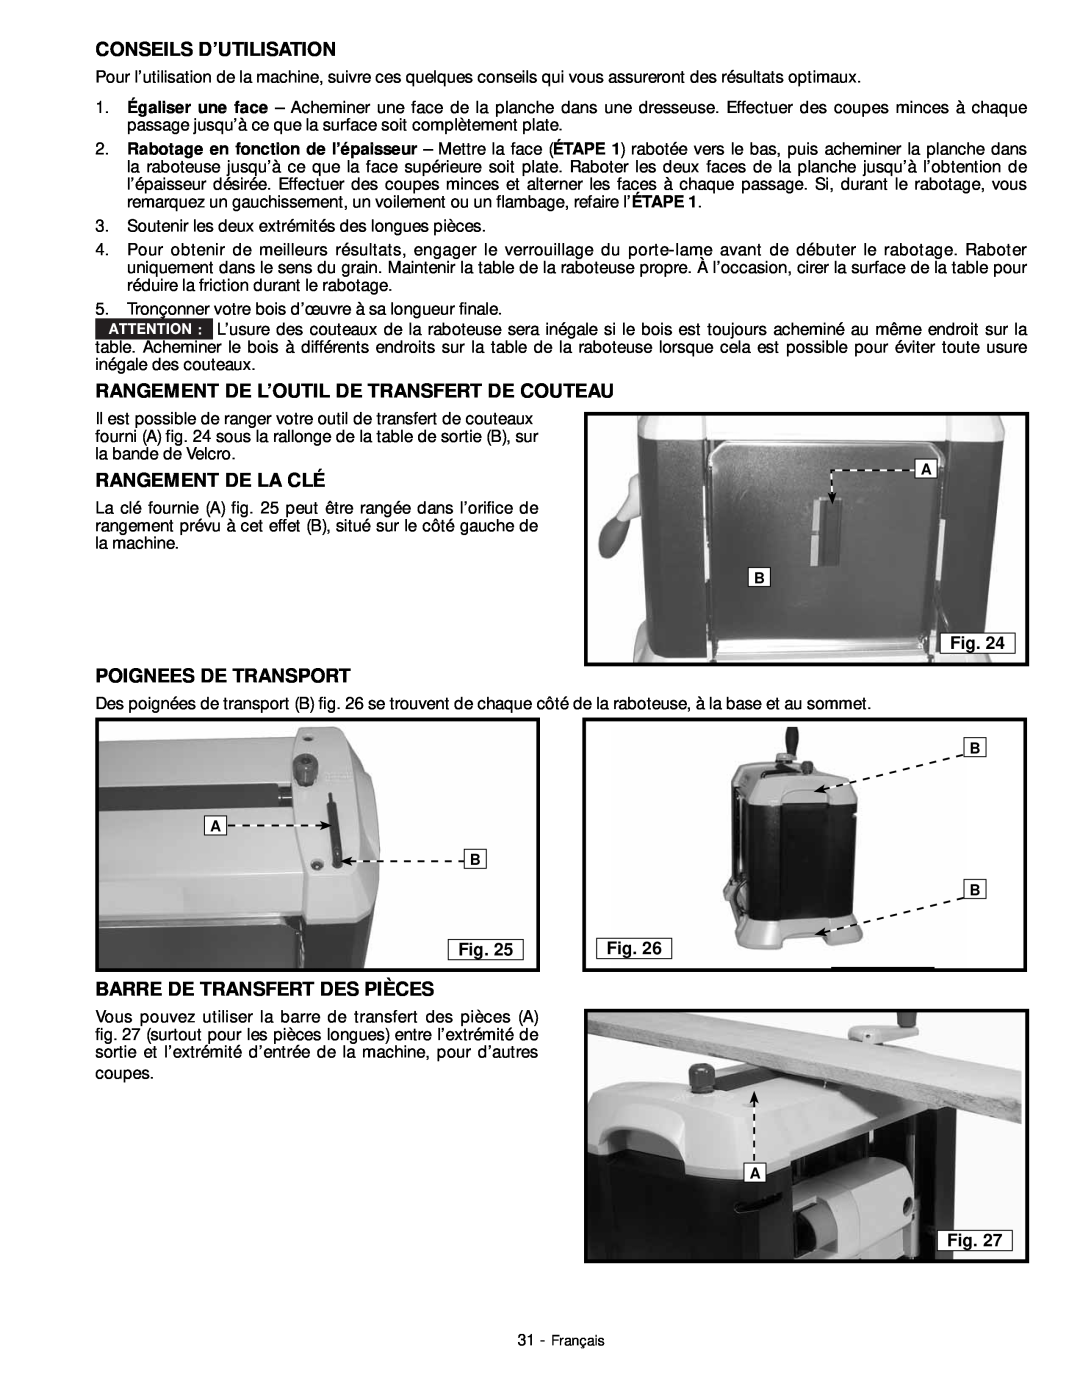 DeWalt 18657 instruction manual Conseils D’Utilisation, Rangement De L’Outil De Transfert De Couteau, Rangement De La Clé 